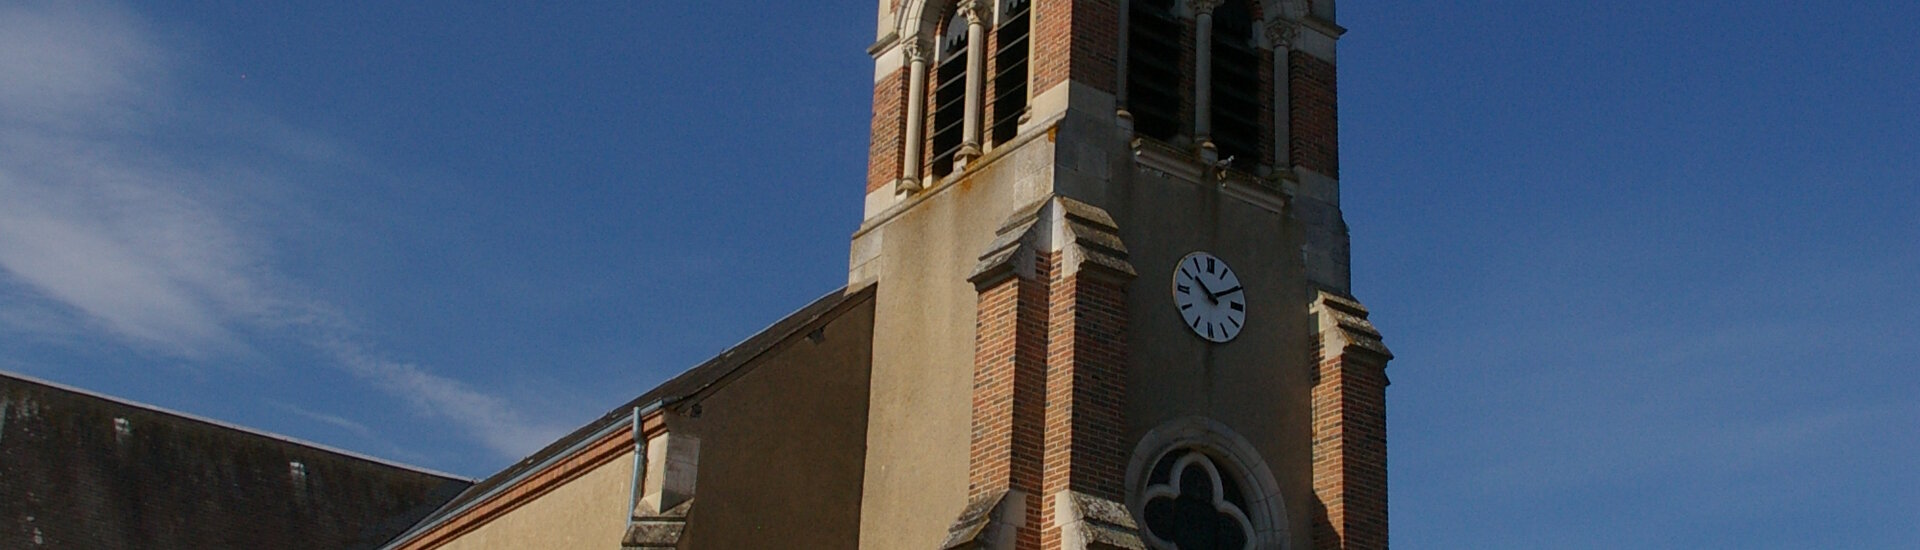 Patrimoine Historique Monuments Eglise Château Cher